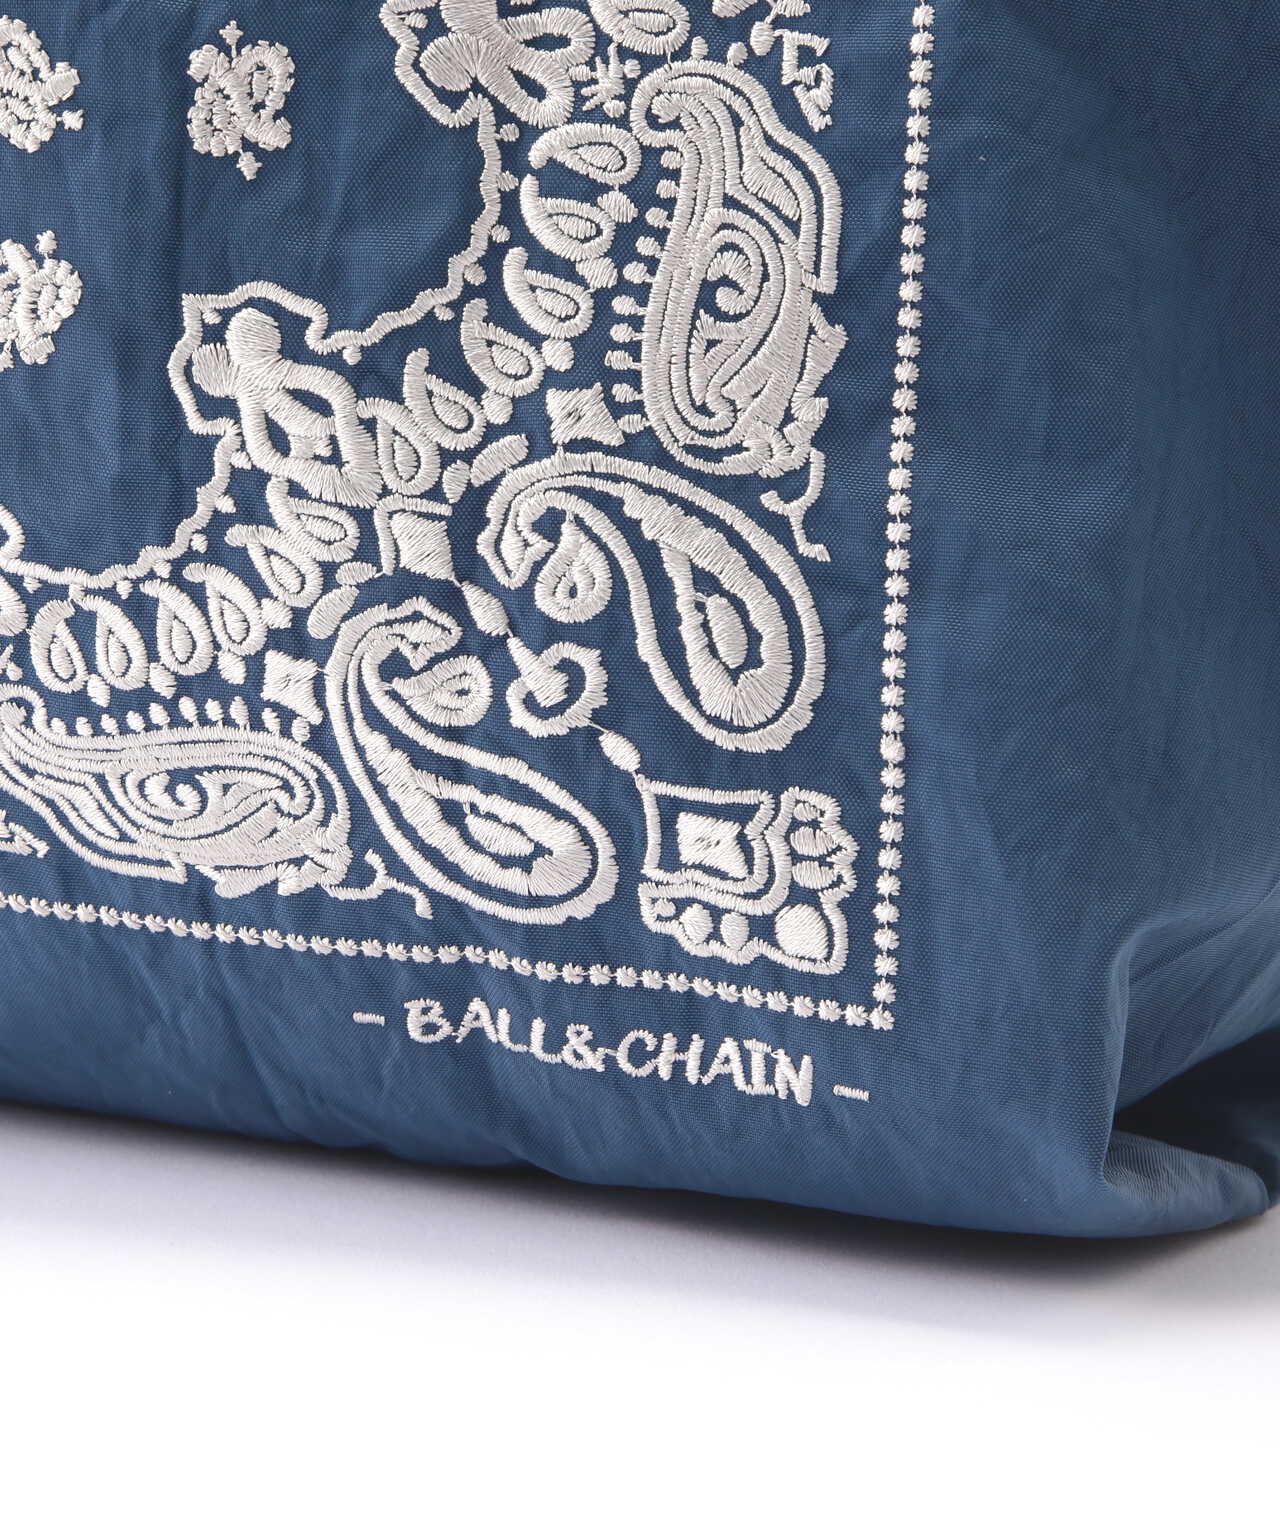 Ball&Chain(ボールアンドチェーン) BANDANA/M 刺繍ショッピングバッグ 